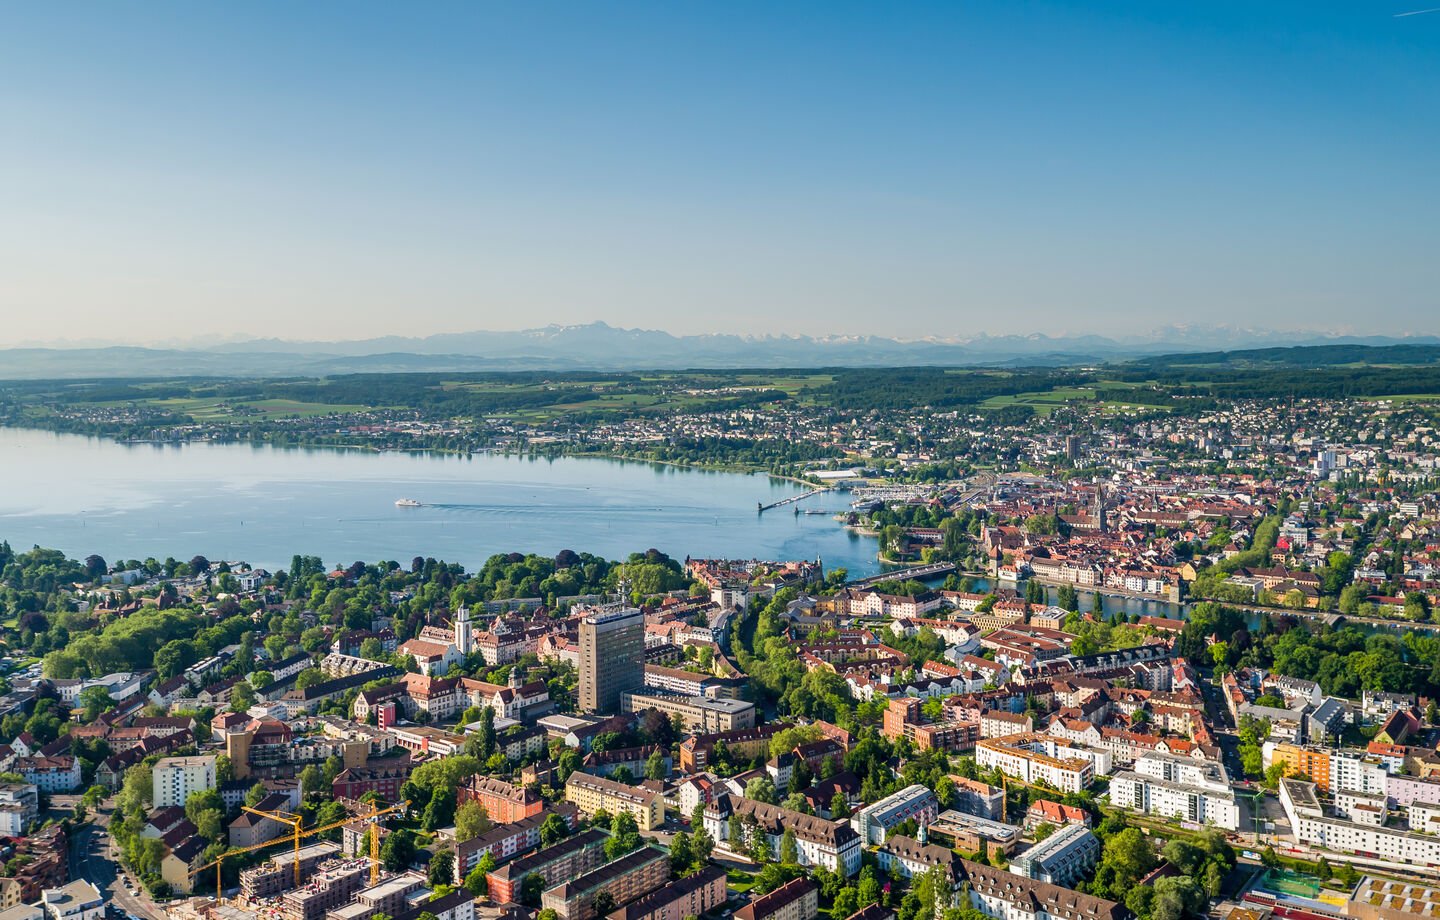 Luftbild von Konstanz und dem Bodensee